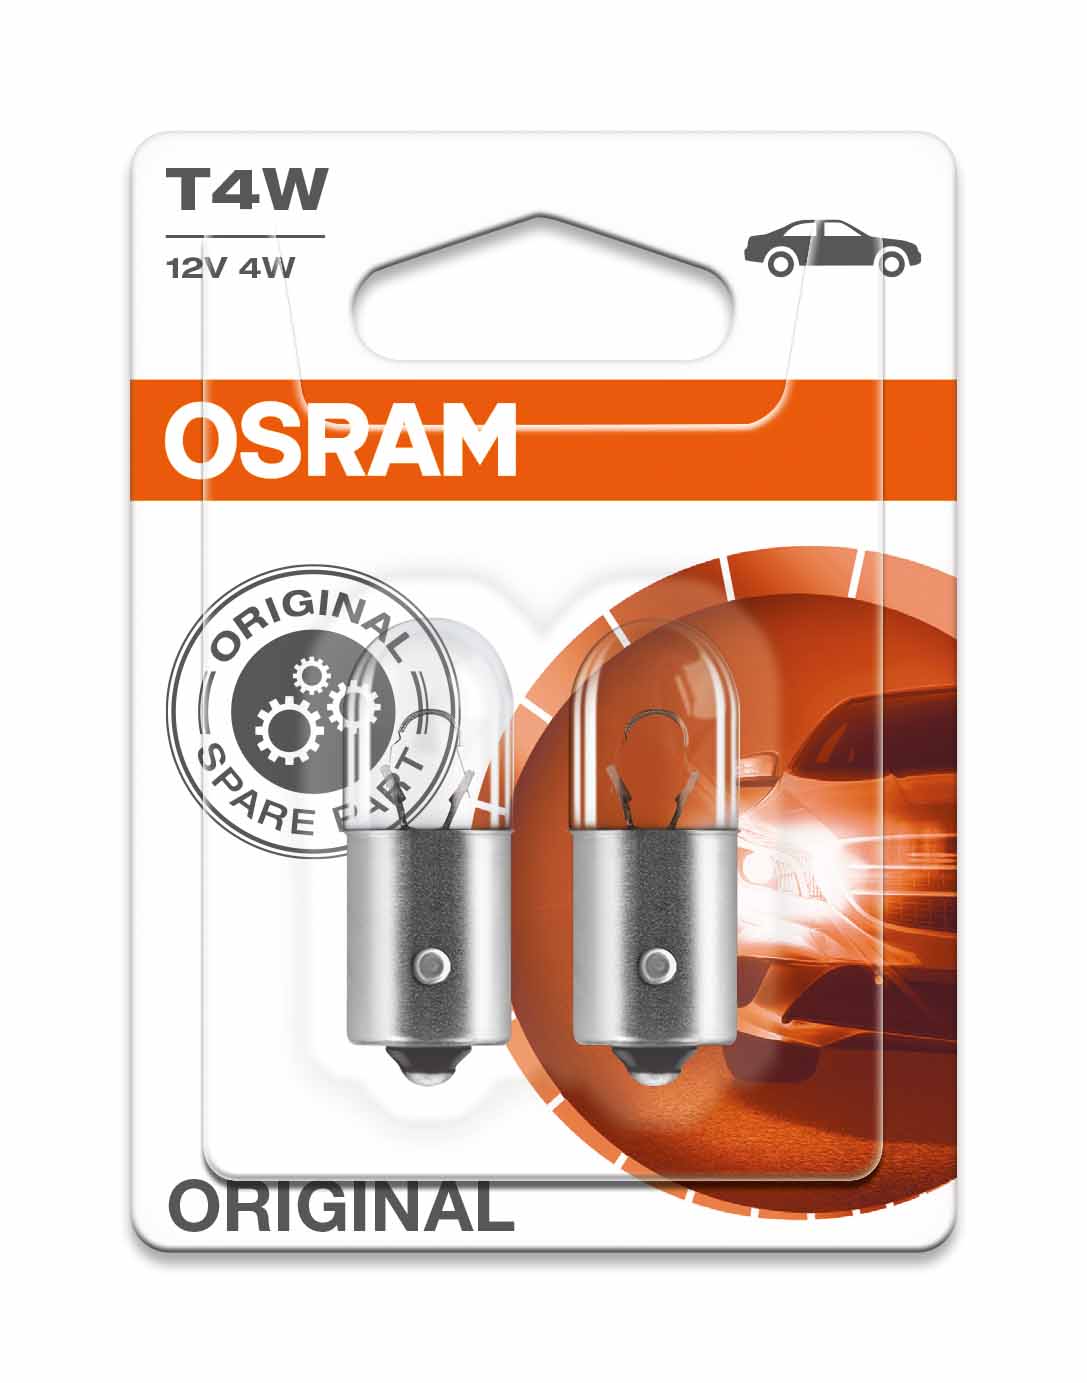 Osram T4W BA9s 12V 4W - Original - Set